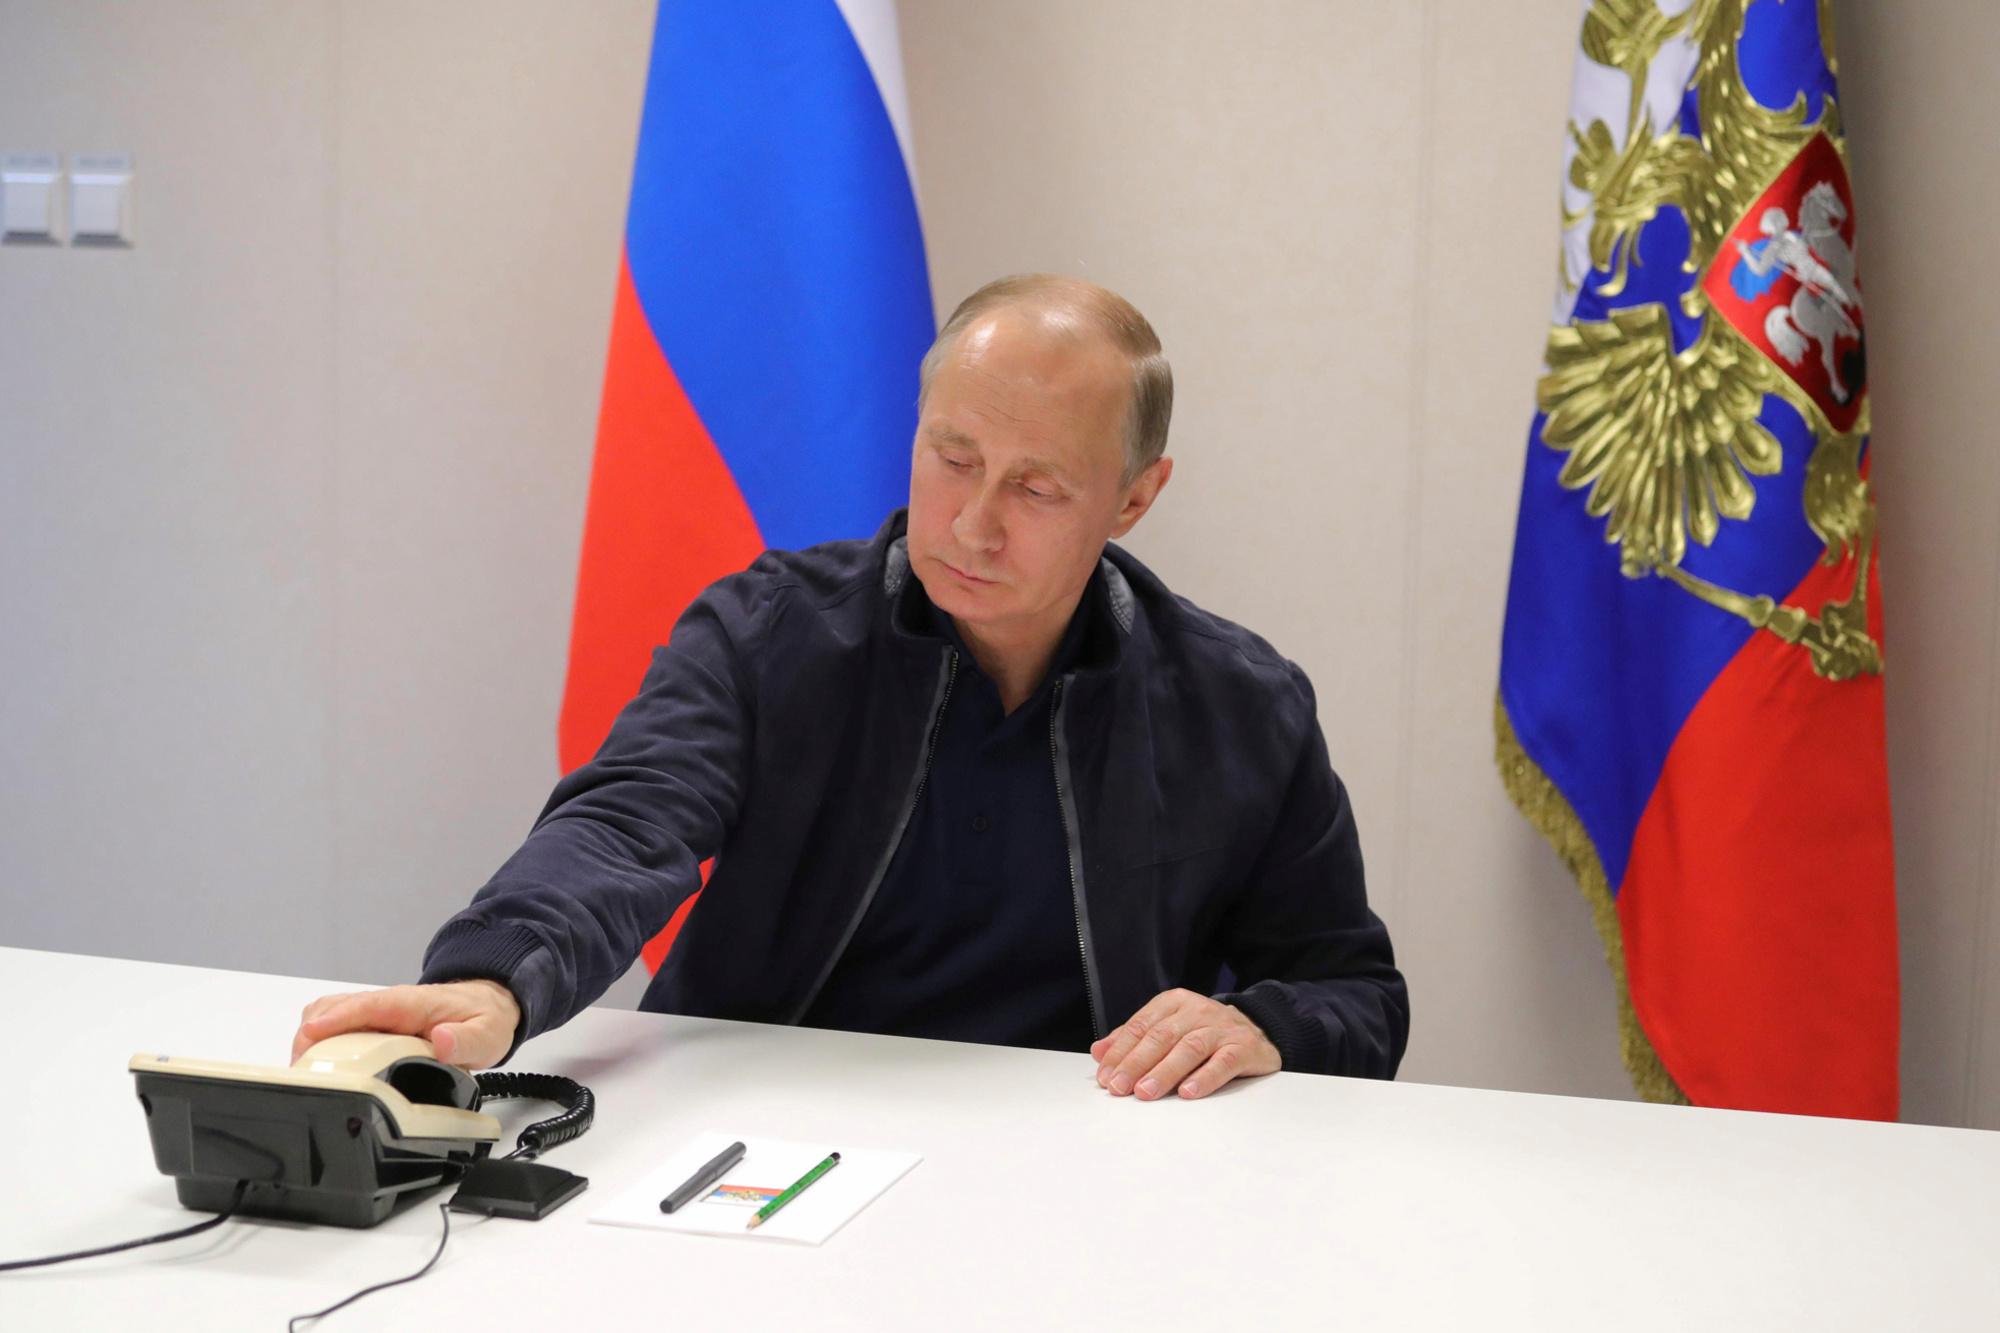 Archiefbeeld van de Russische president Vladimir Poetin die de telefoon opneemt.